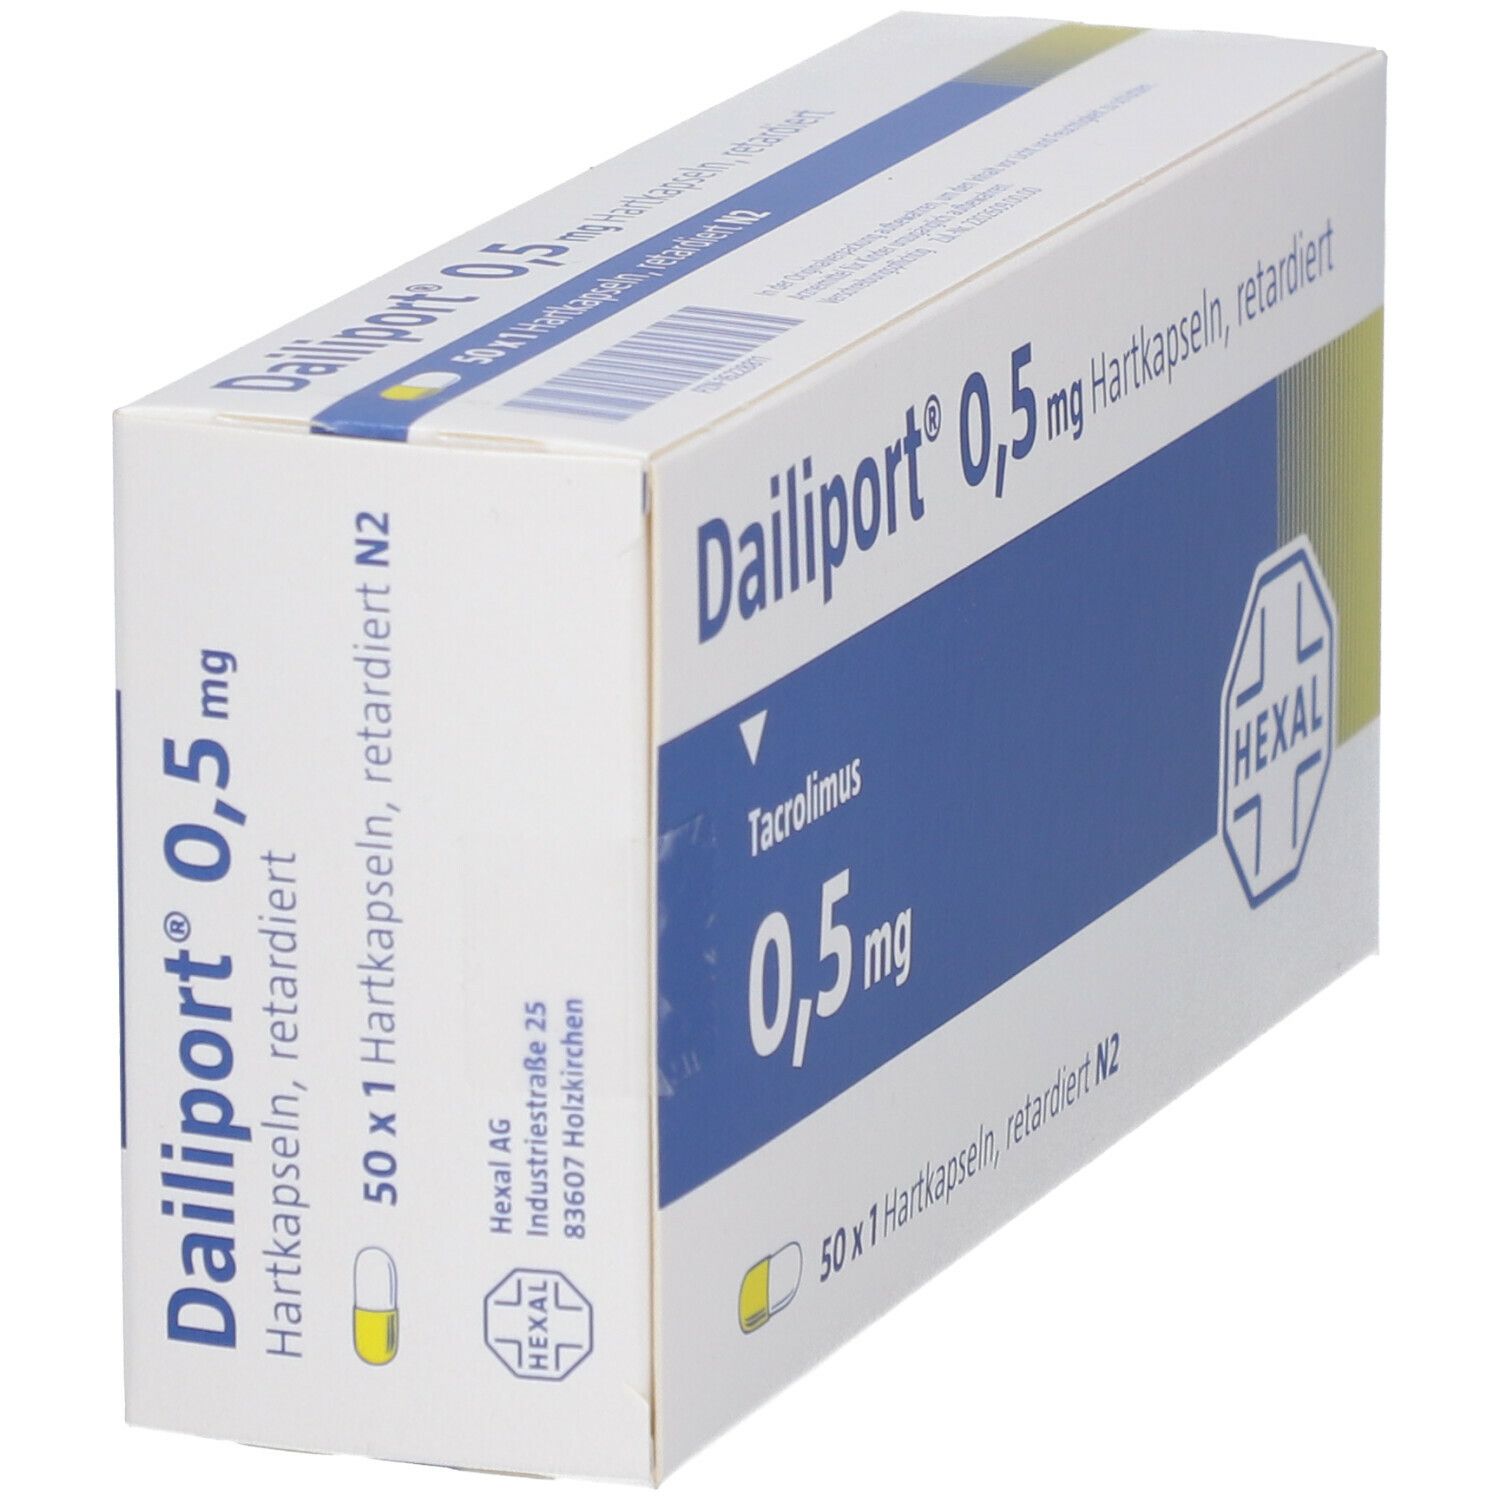 Dailiport® 0,5 mg